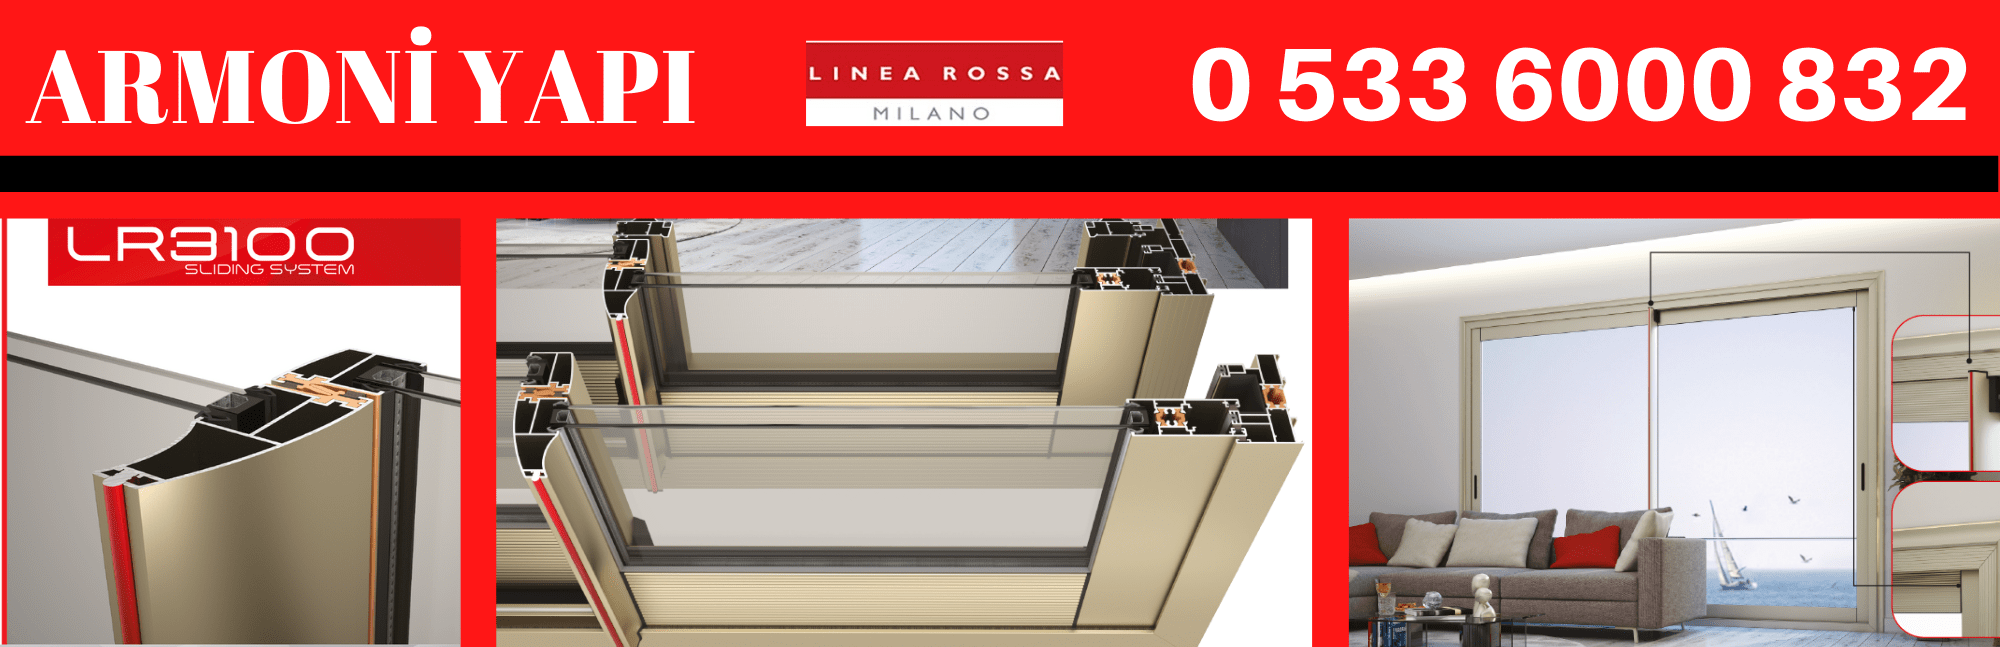 Linea Rossa LR-3100 ısı yalıtımlı sürme doğrama